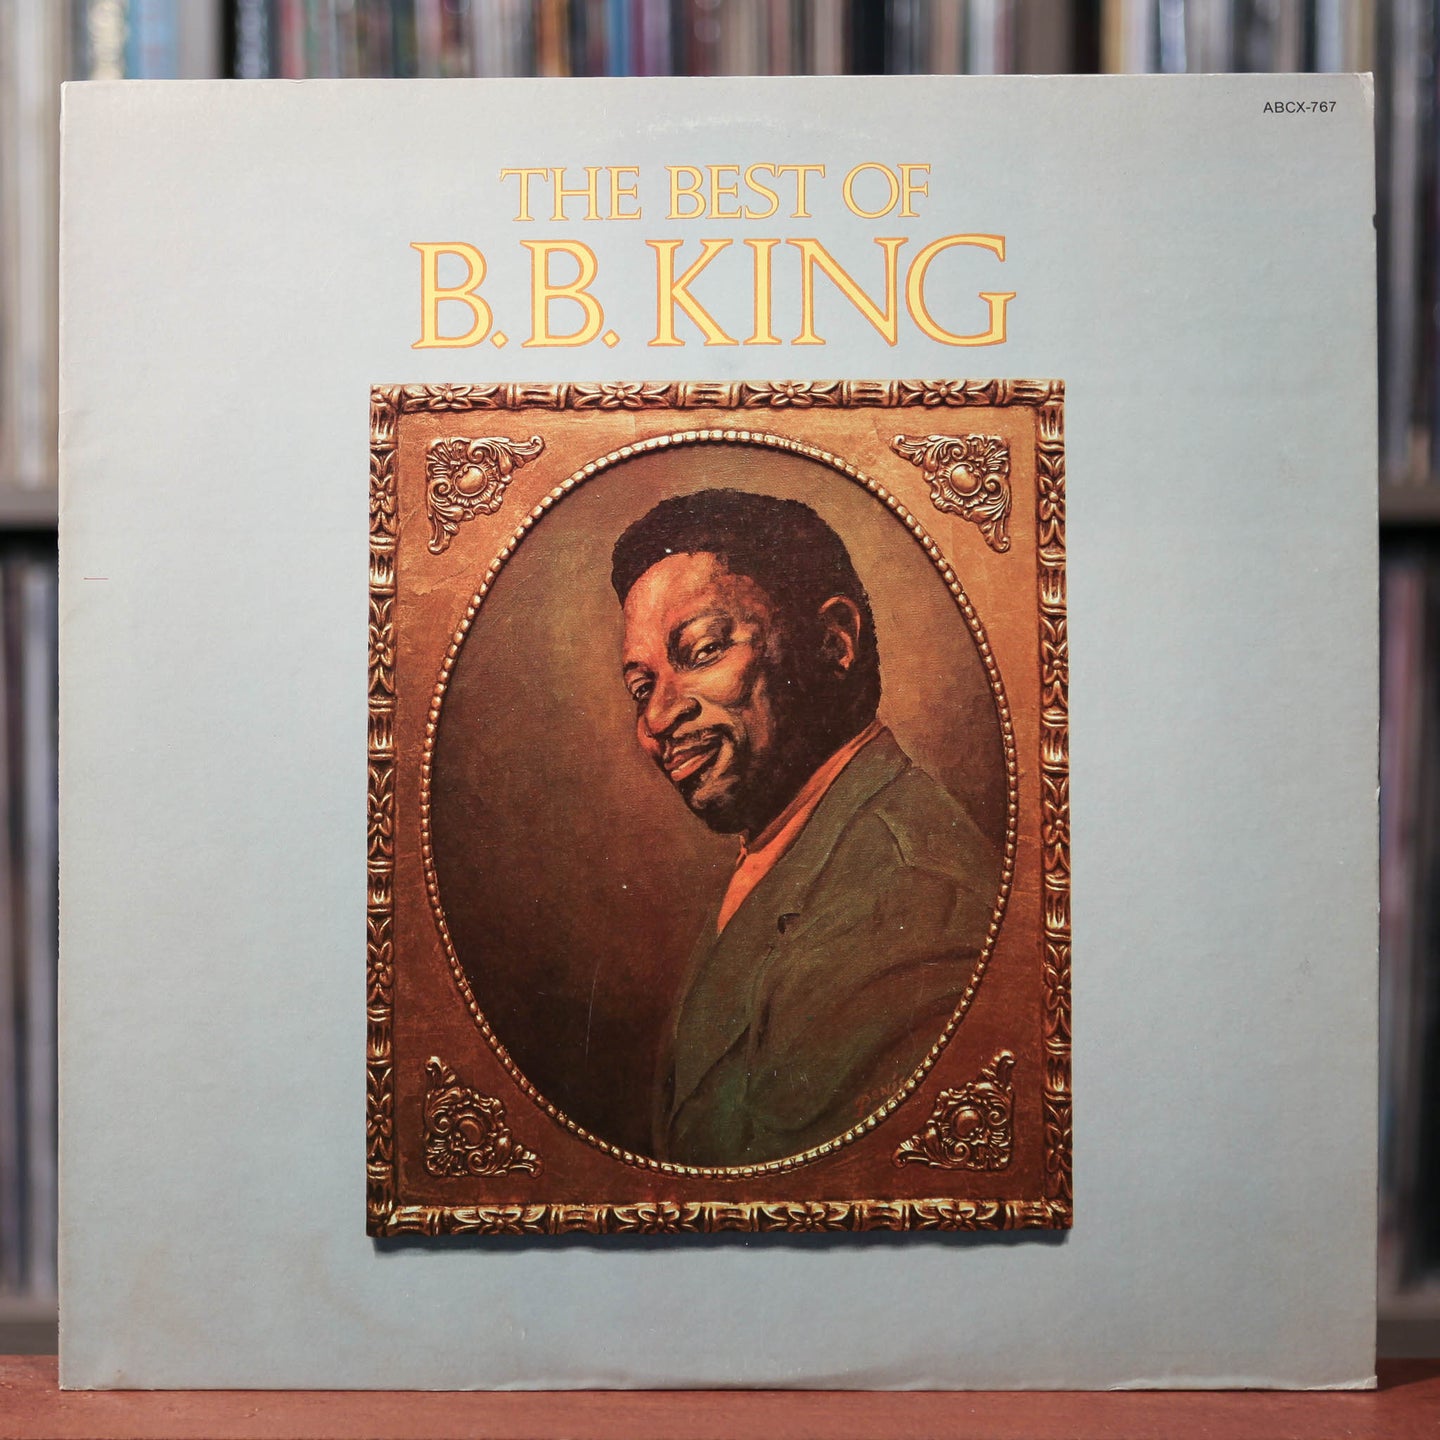 B.B. King - The Best Of B.B. King - 1973 MCA, EX/EX